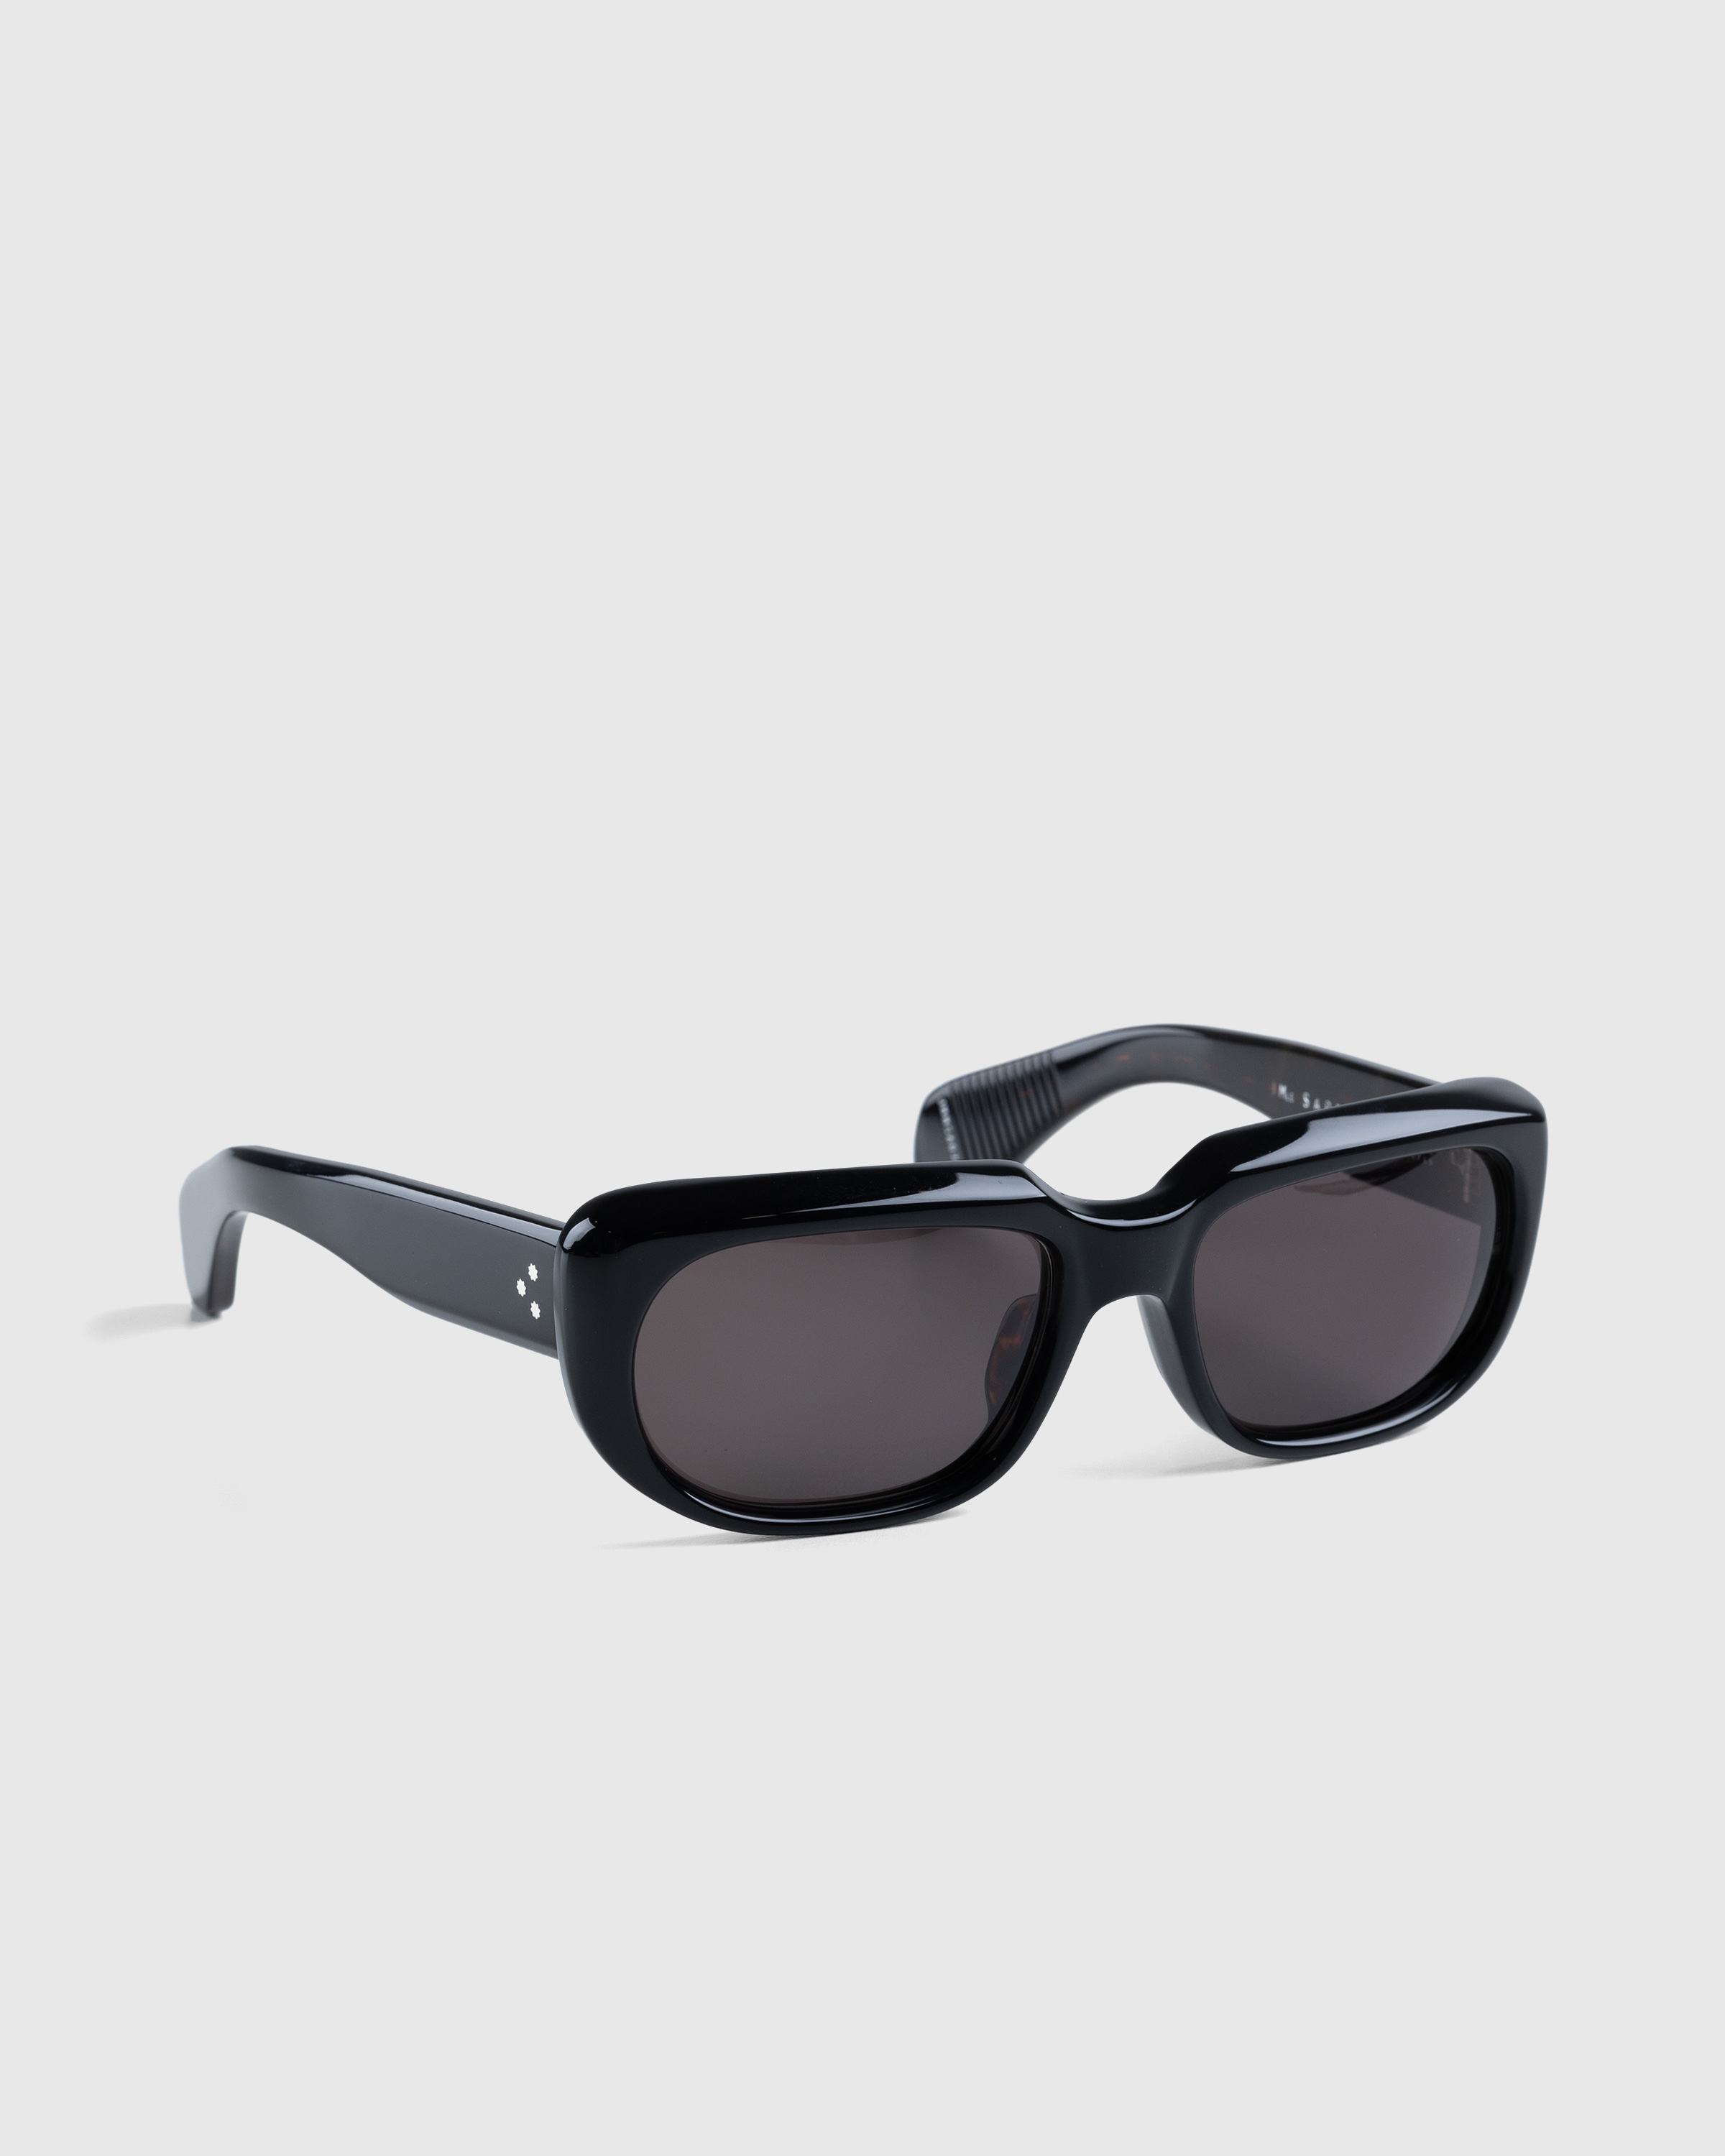 Jacques Marie Mage – Sartet Noir - Sunglasses - Black - Image 3